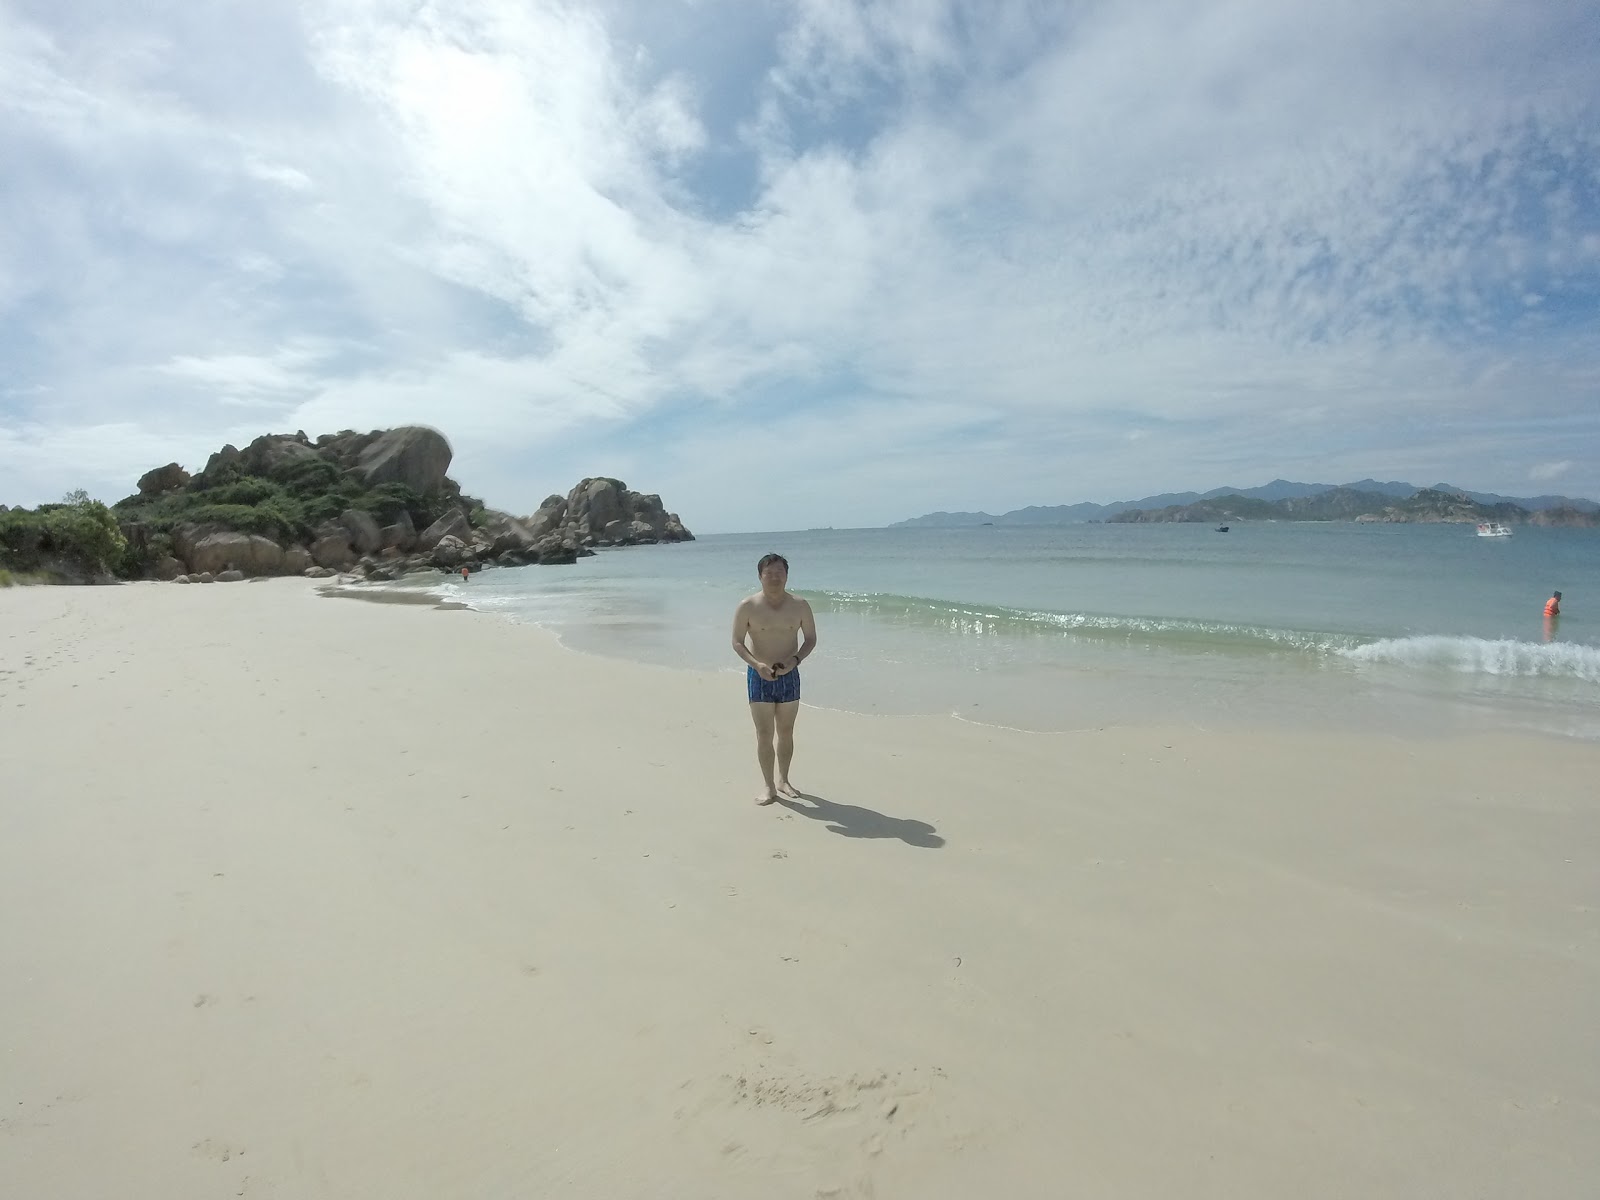 Fotografie cu Sa Huynh Beach cu o suprafață de nisip fin alb